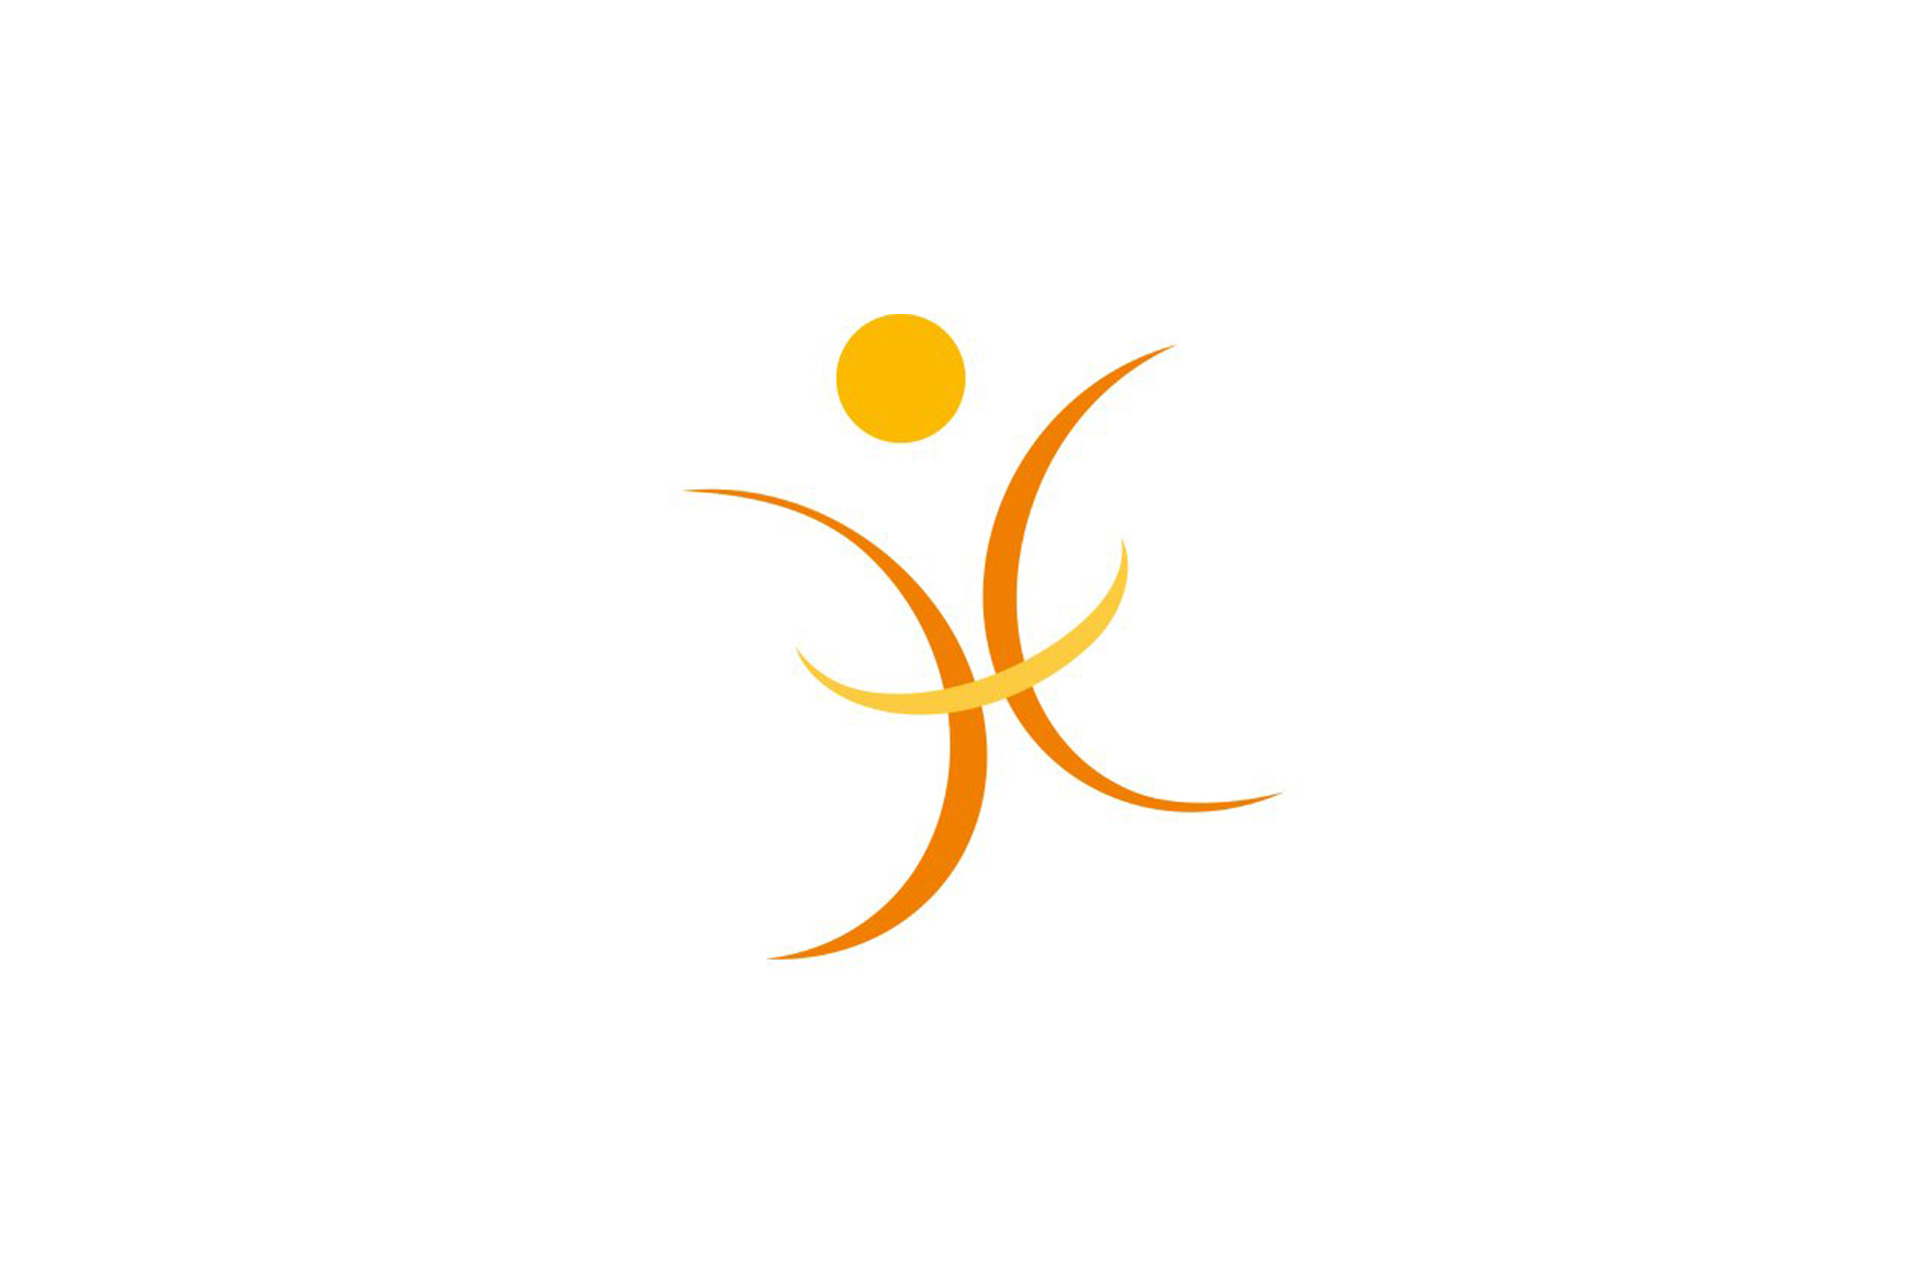 Emergex logo